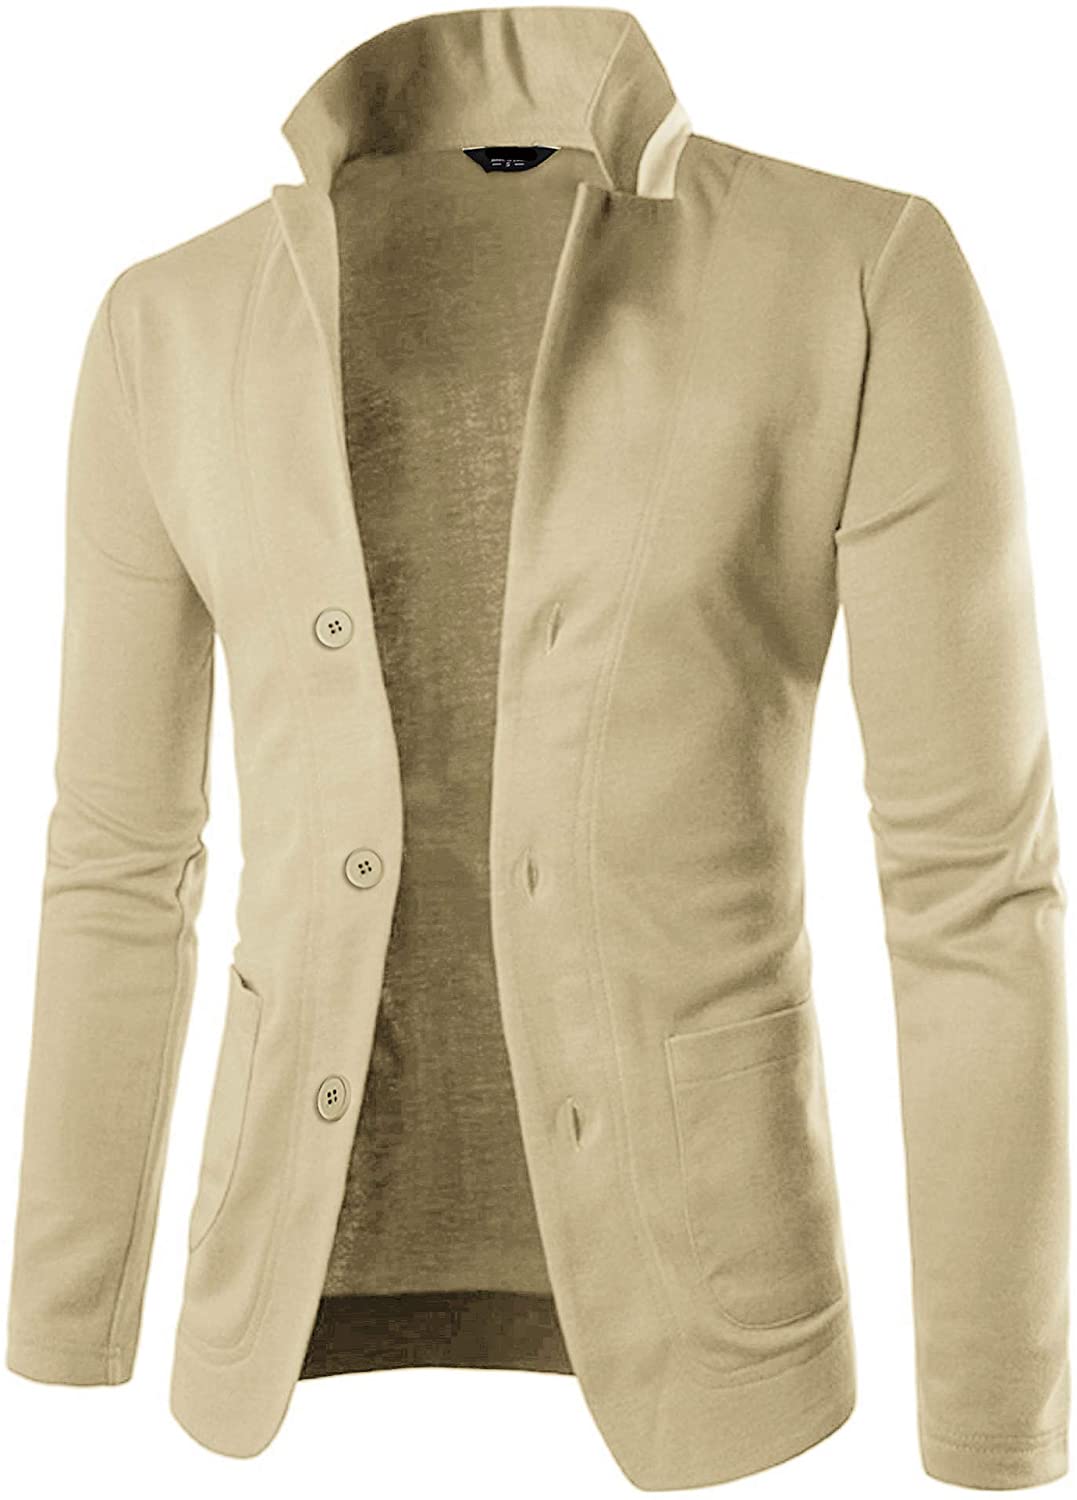 JINIDU Mens Slim Fit Blazer Jacket Casual One Button Suit Coat